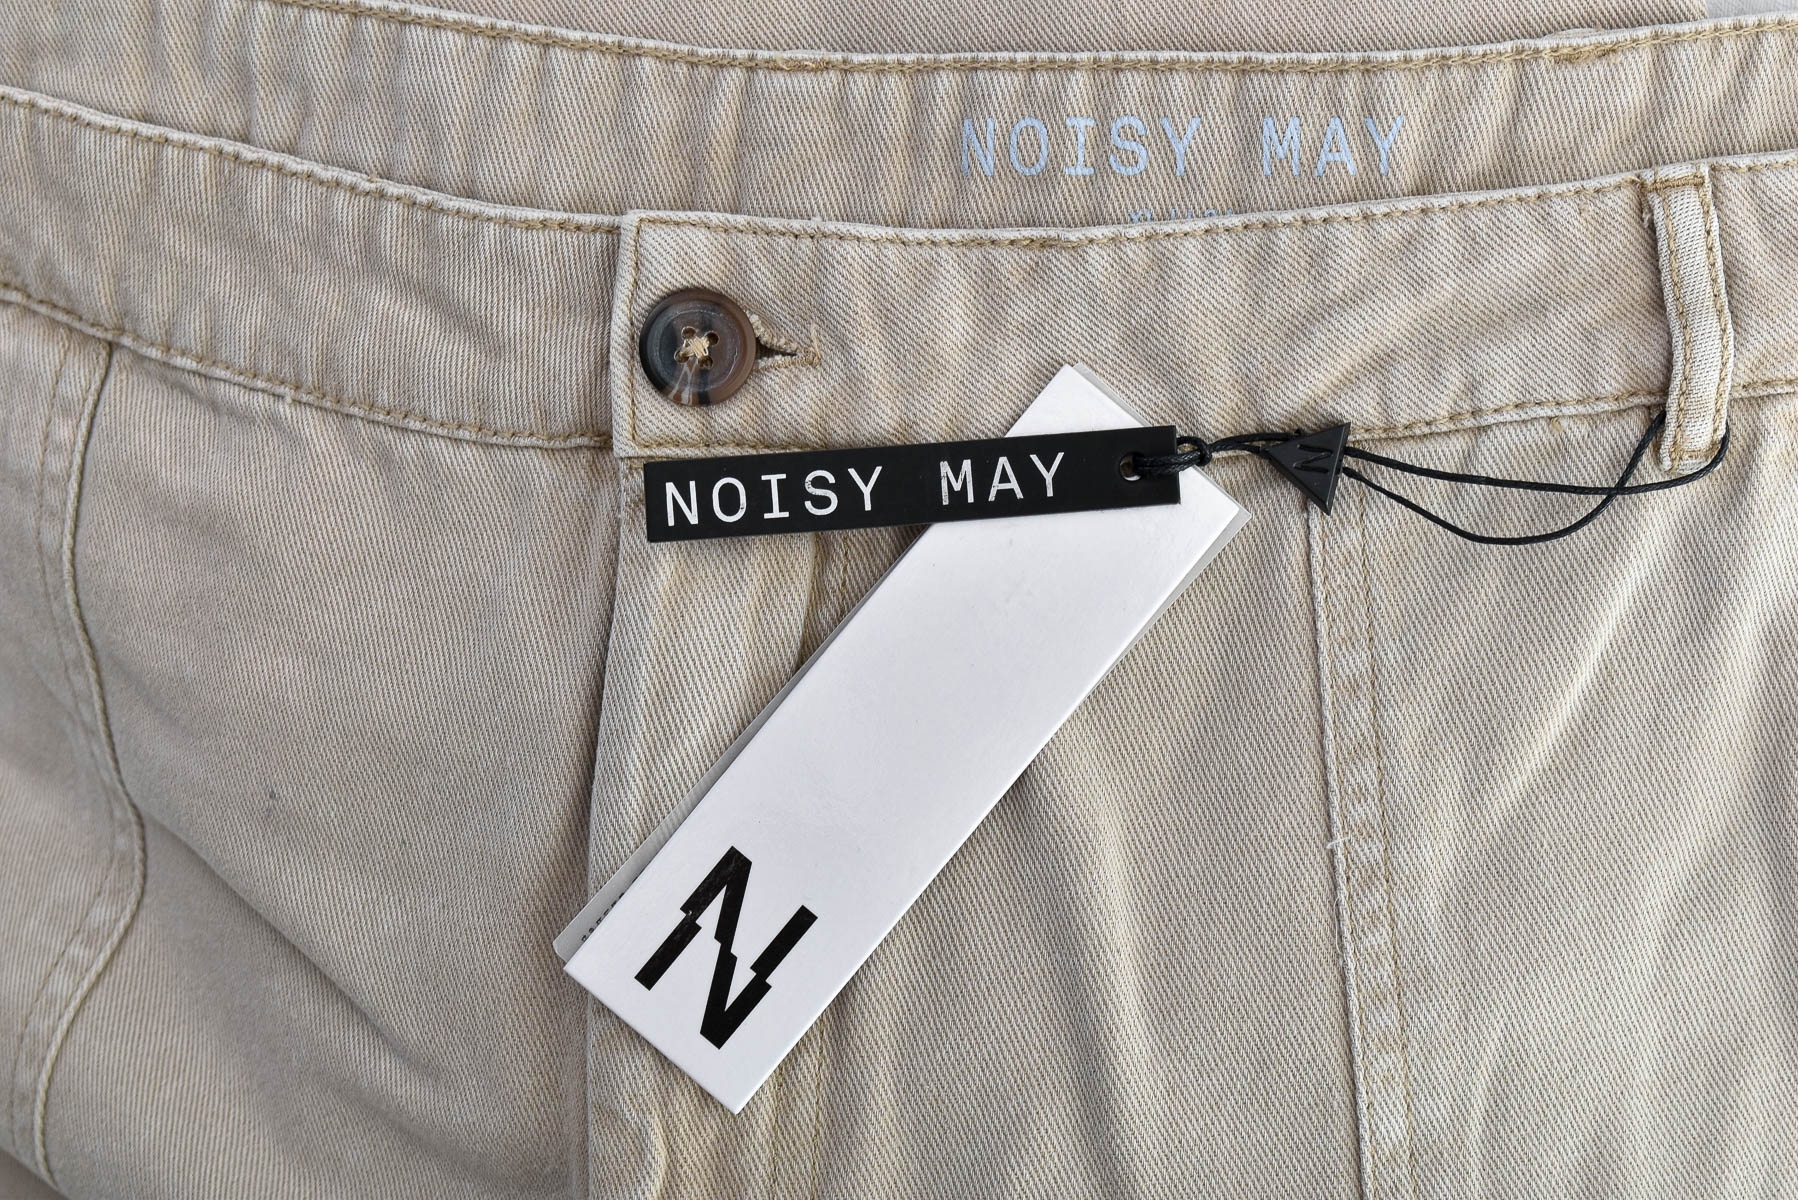 Women's trousers - Noisy May - 2